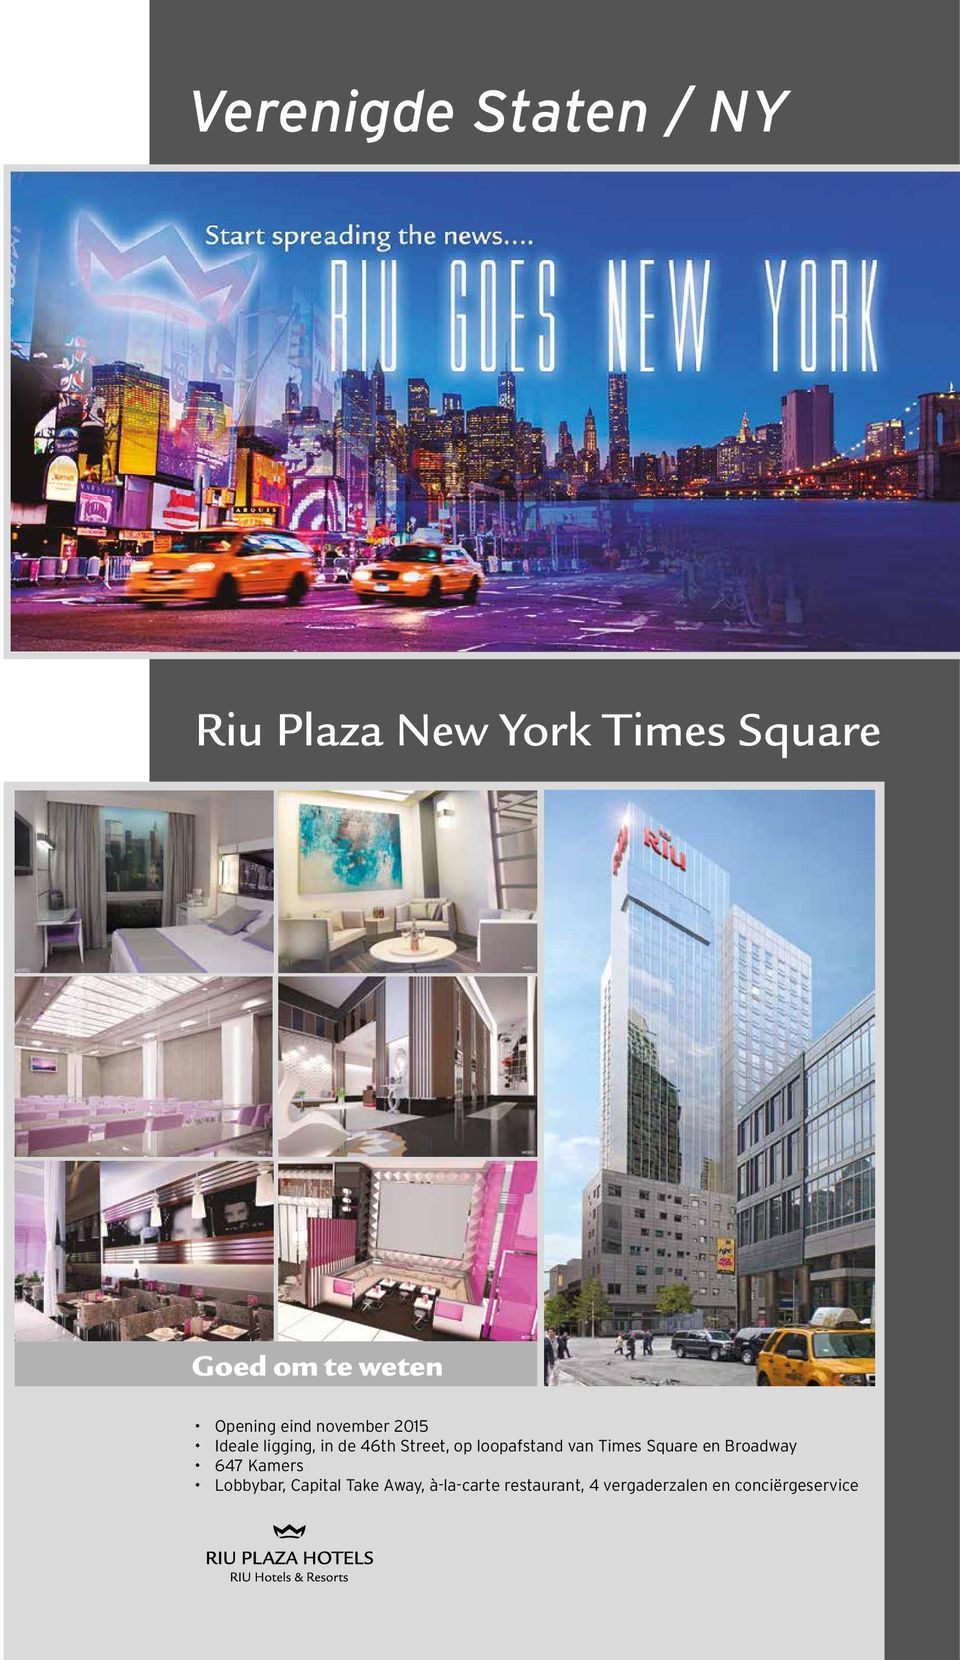 loopafstand van Times Square en Broadway 647 Kamers Lobbybar,